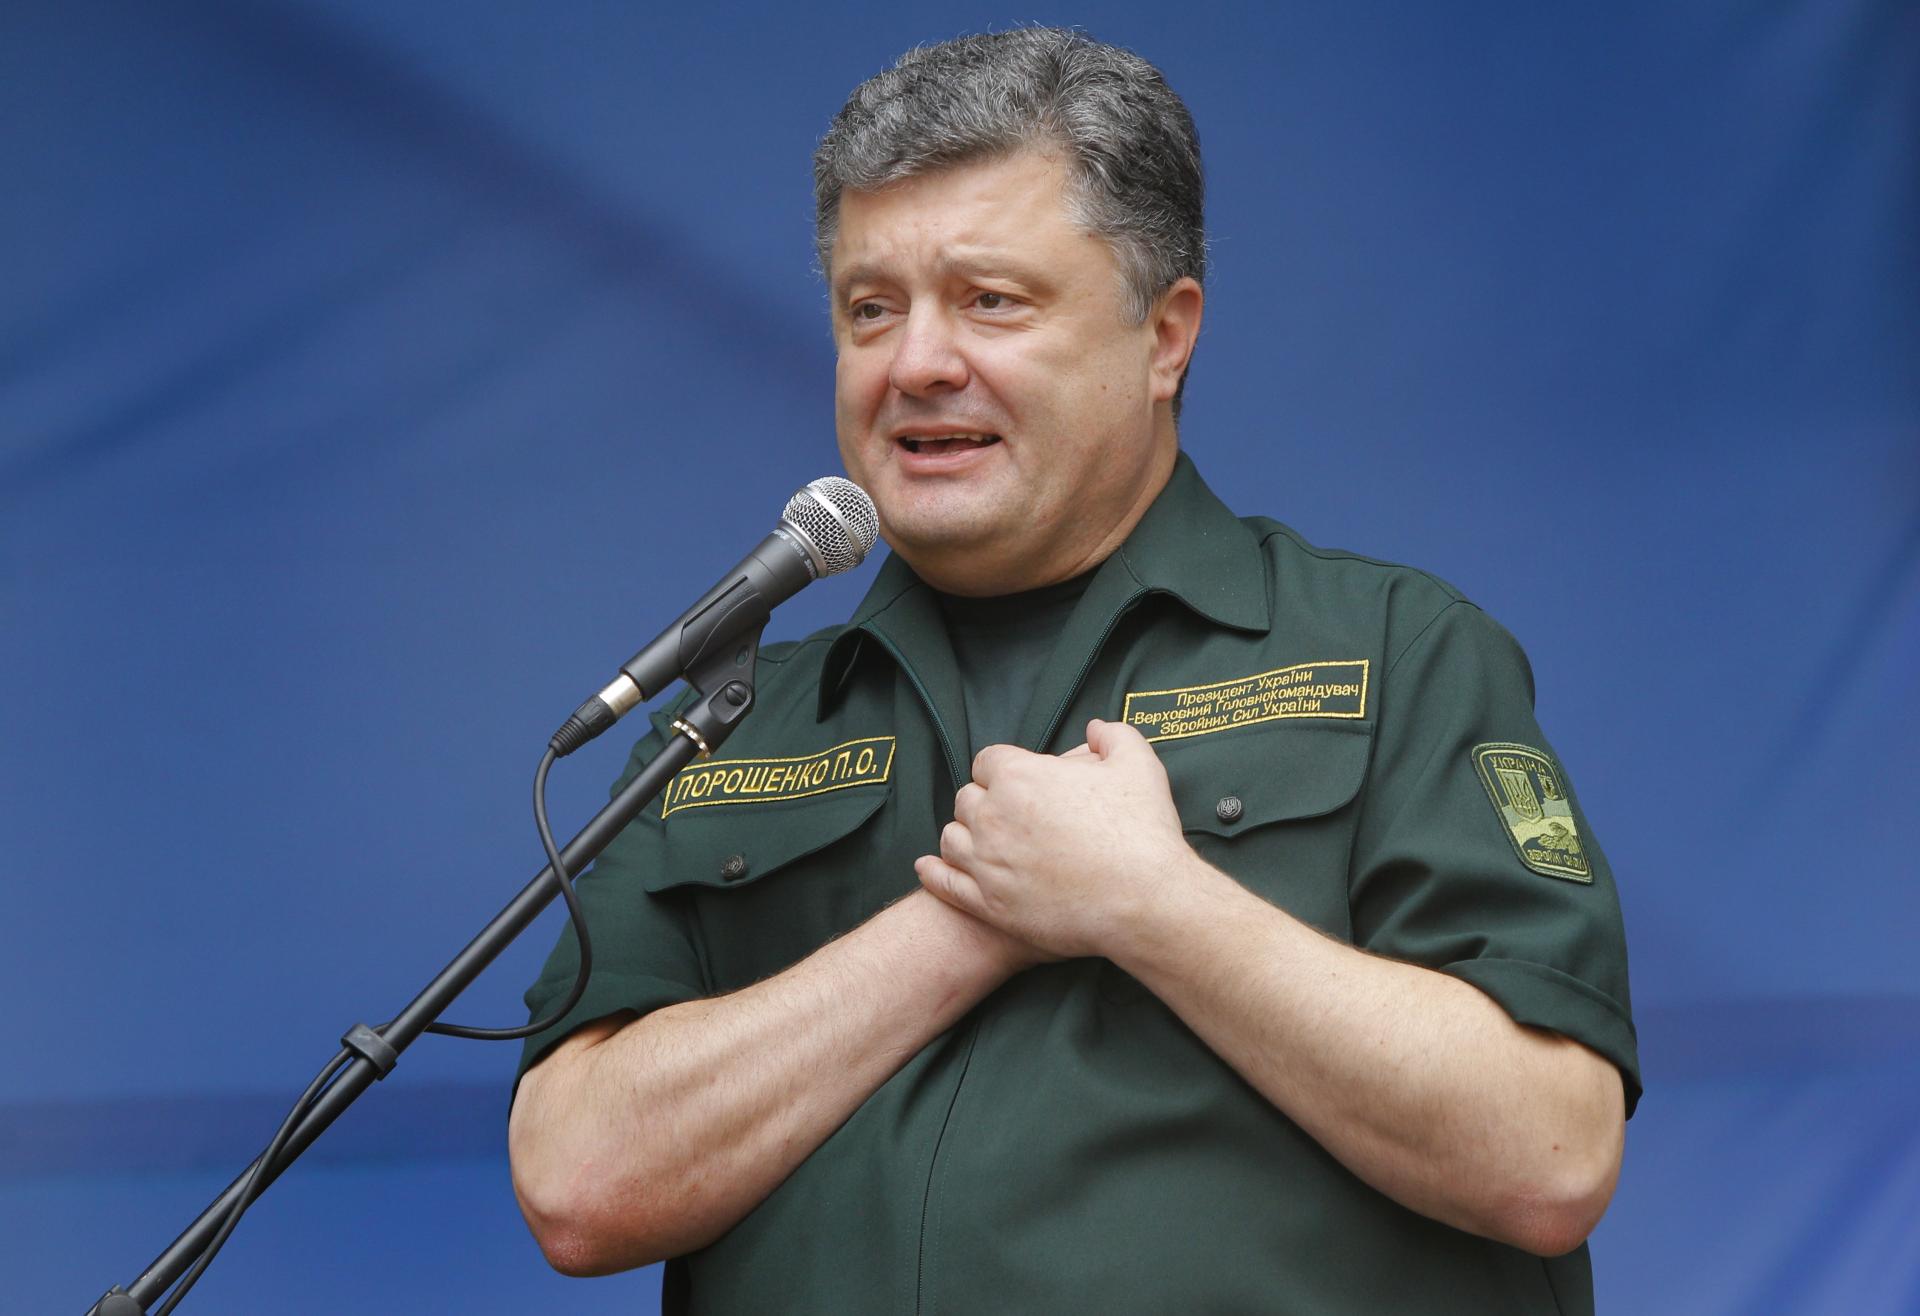 Exprezidentovi Porošenkovi nepovolili vycestovať z Ukrajiny. Je to protiukrajinská sabotáž, tvrdí